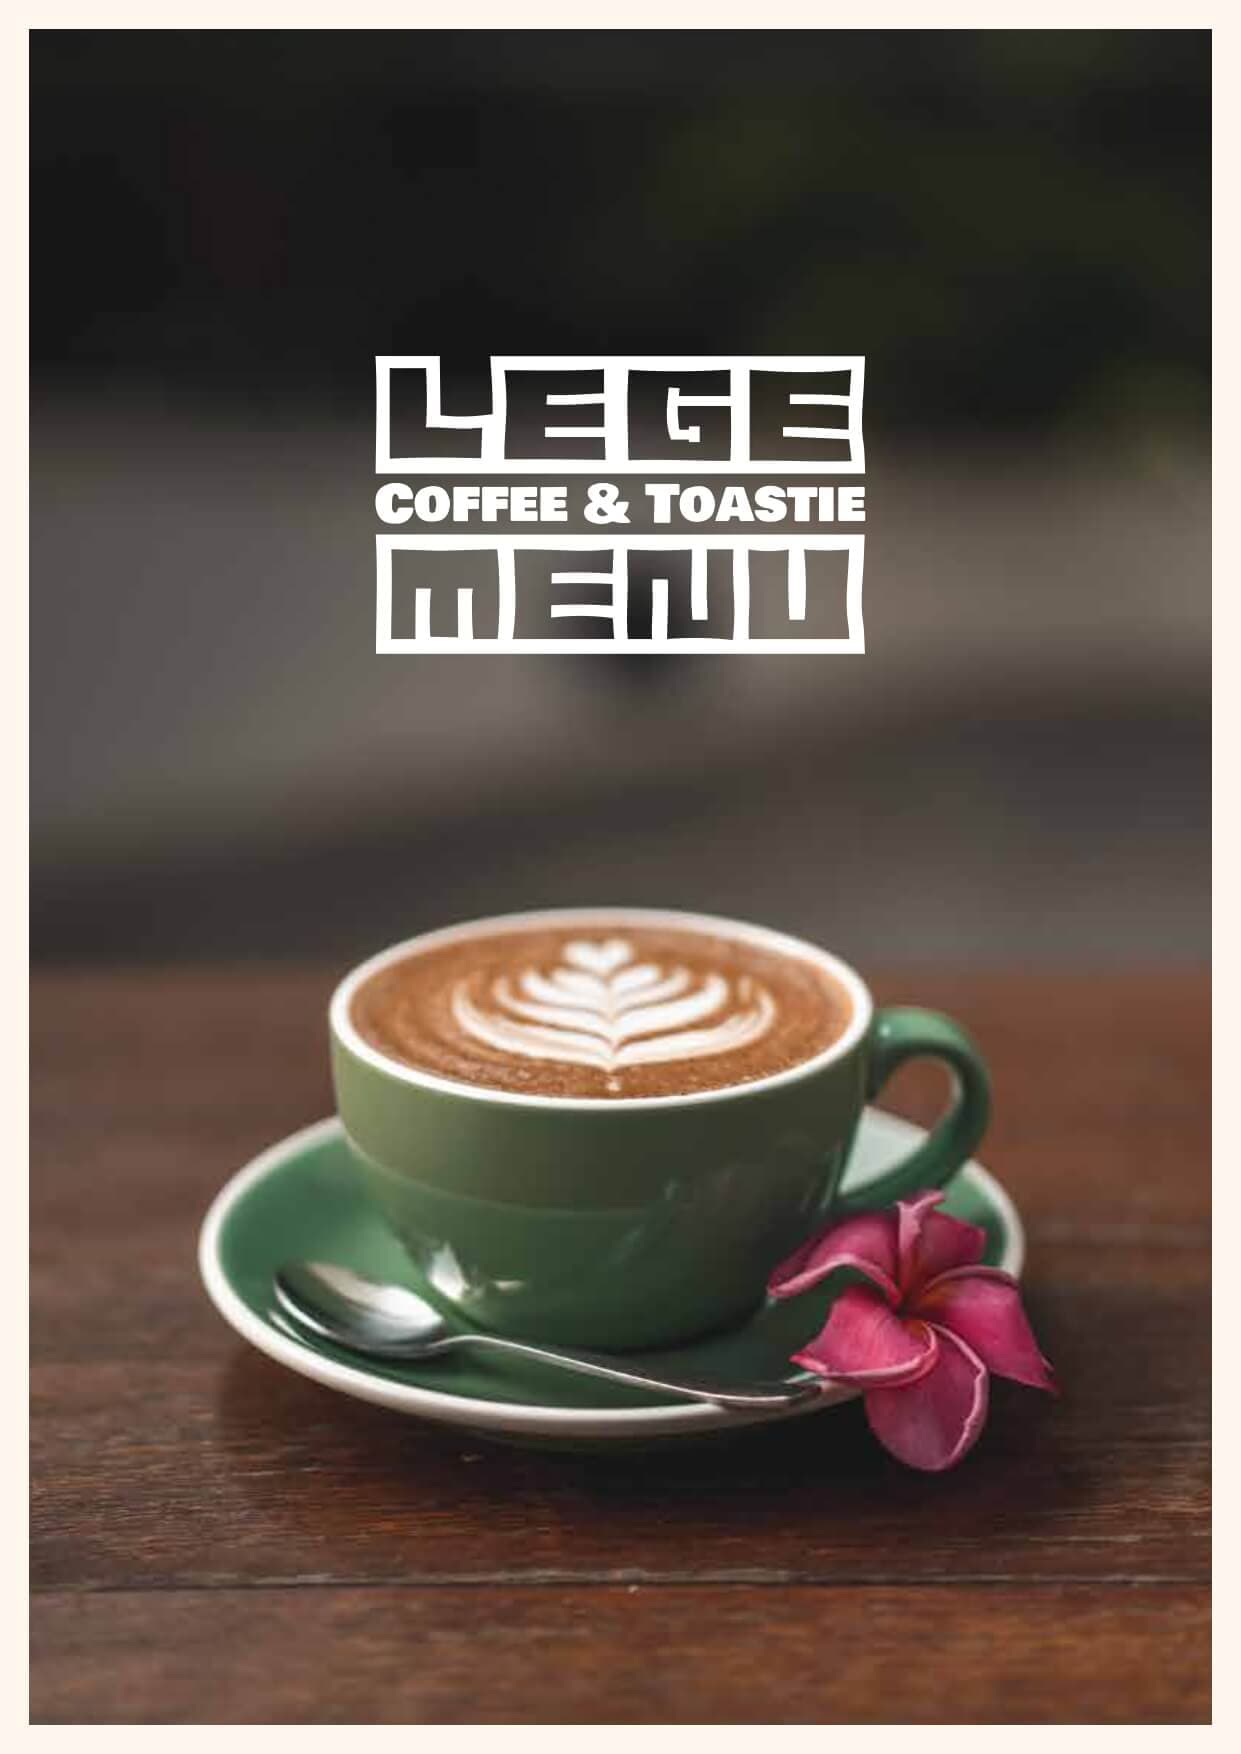 LEGE Coffee & Toastie, Tebet